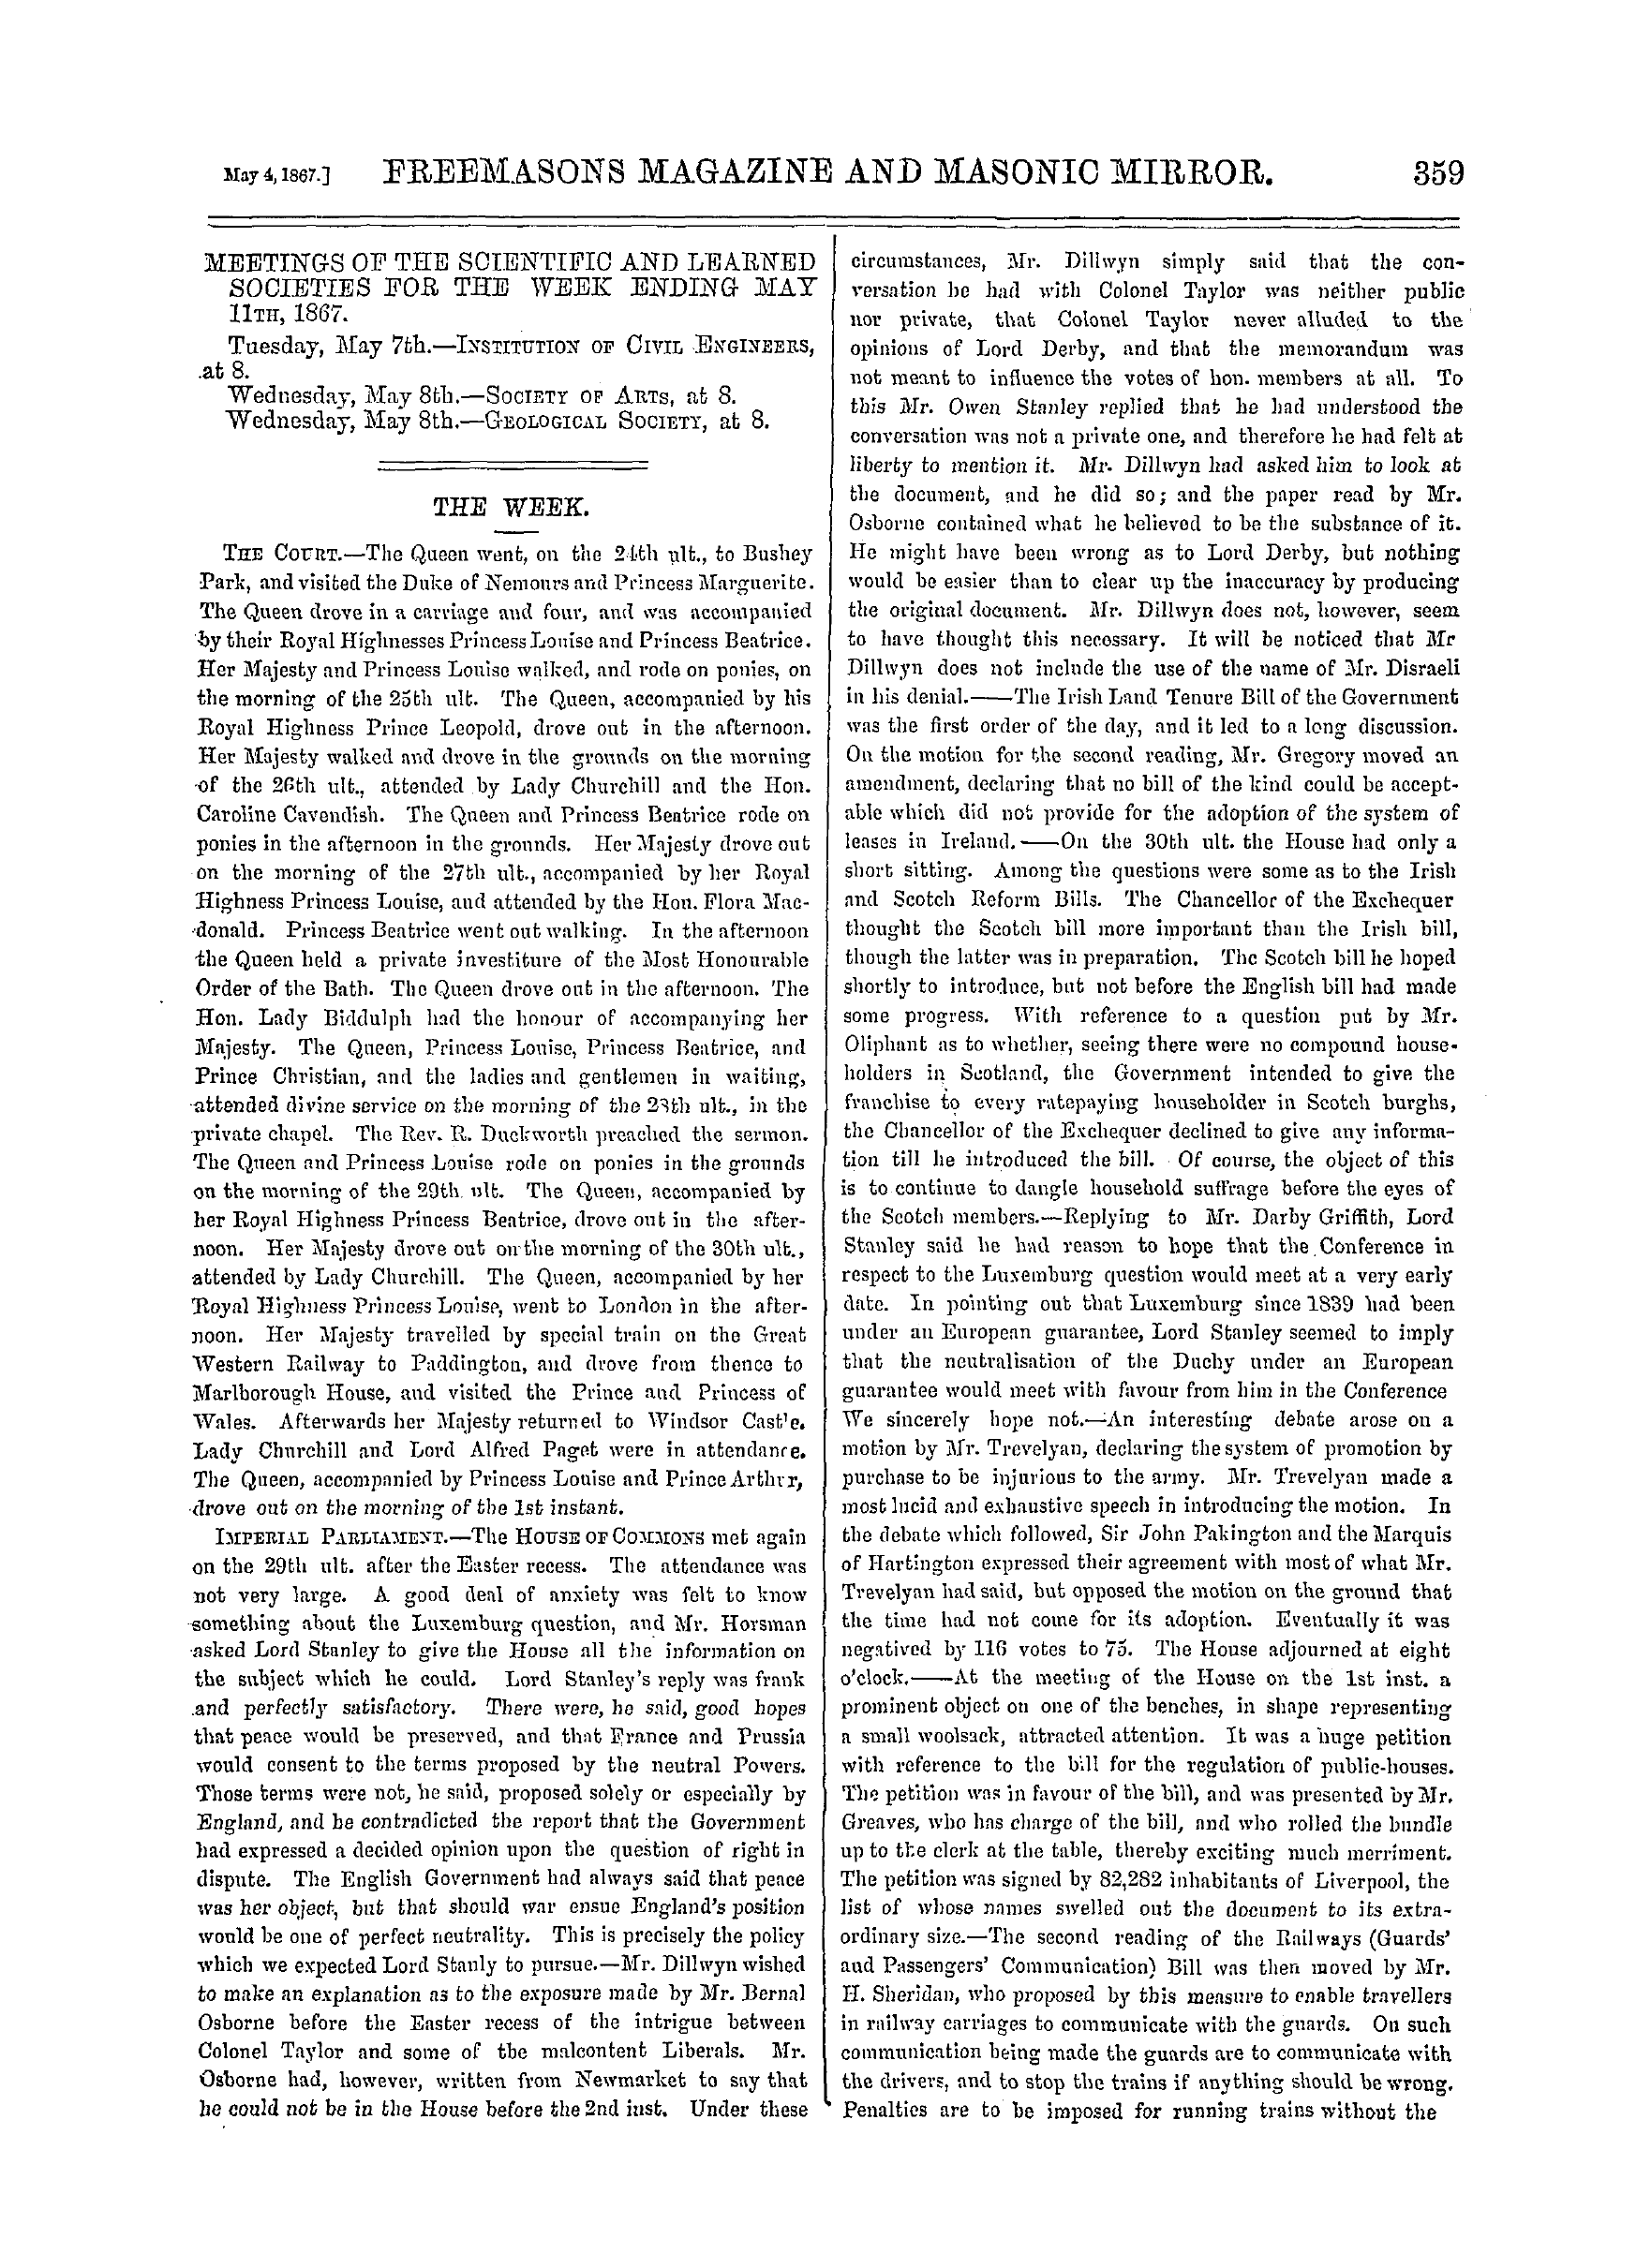 The Freemasons' Monthly Magazine: 1867-05-04: 19